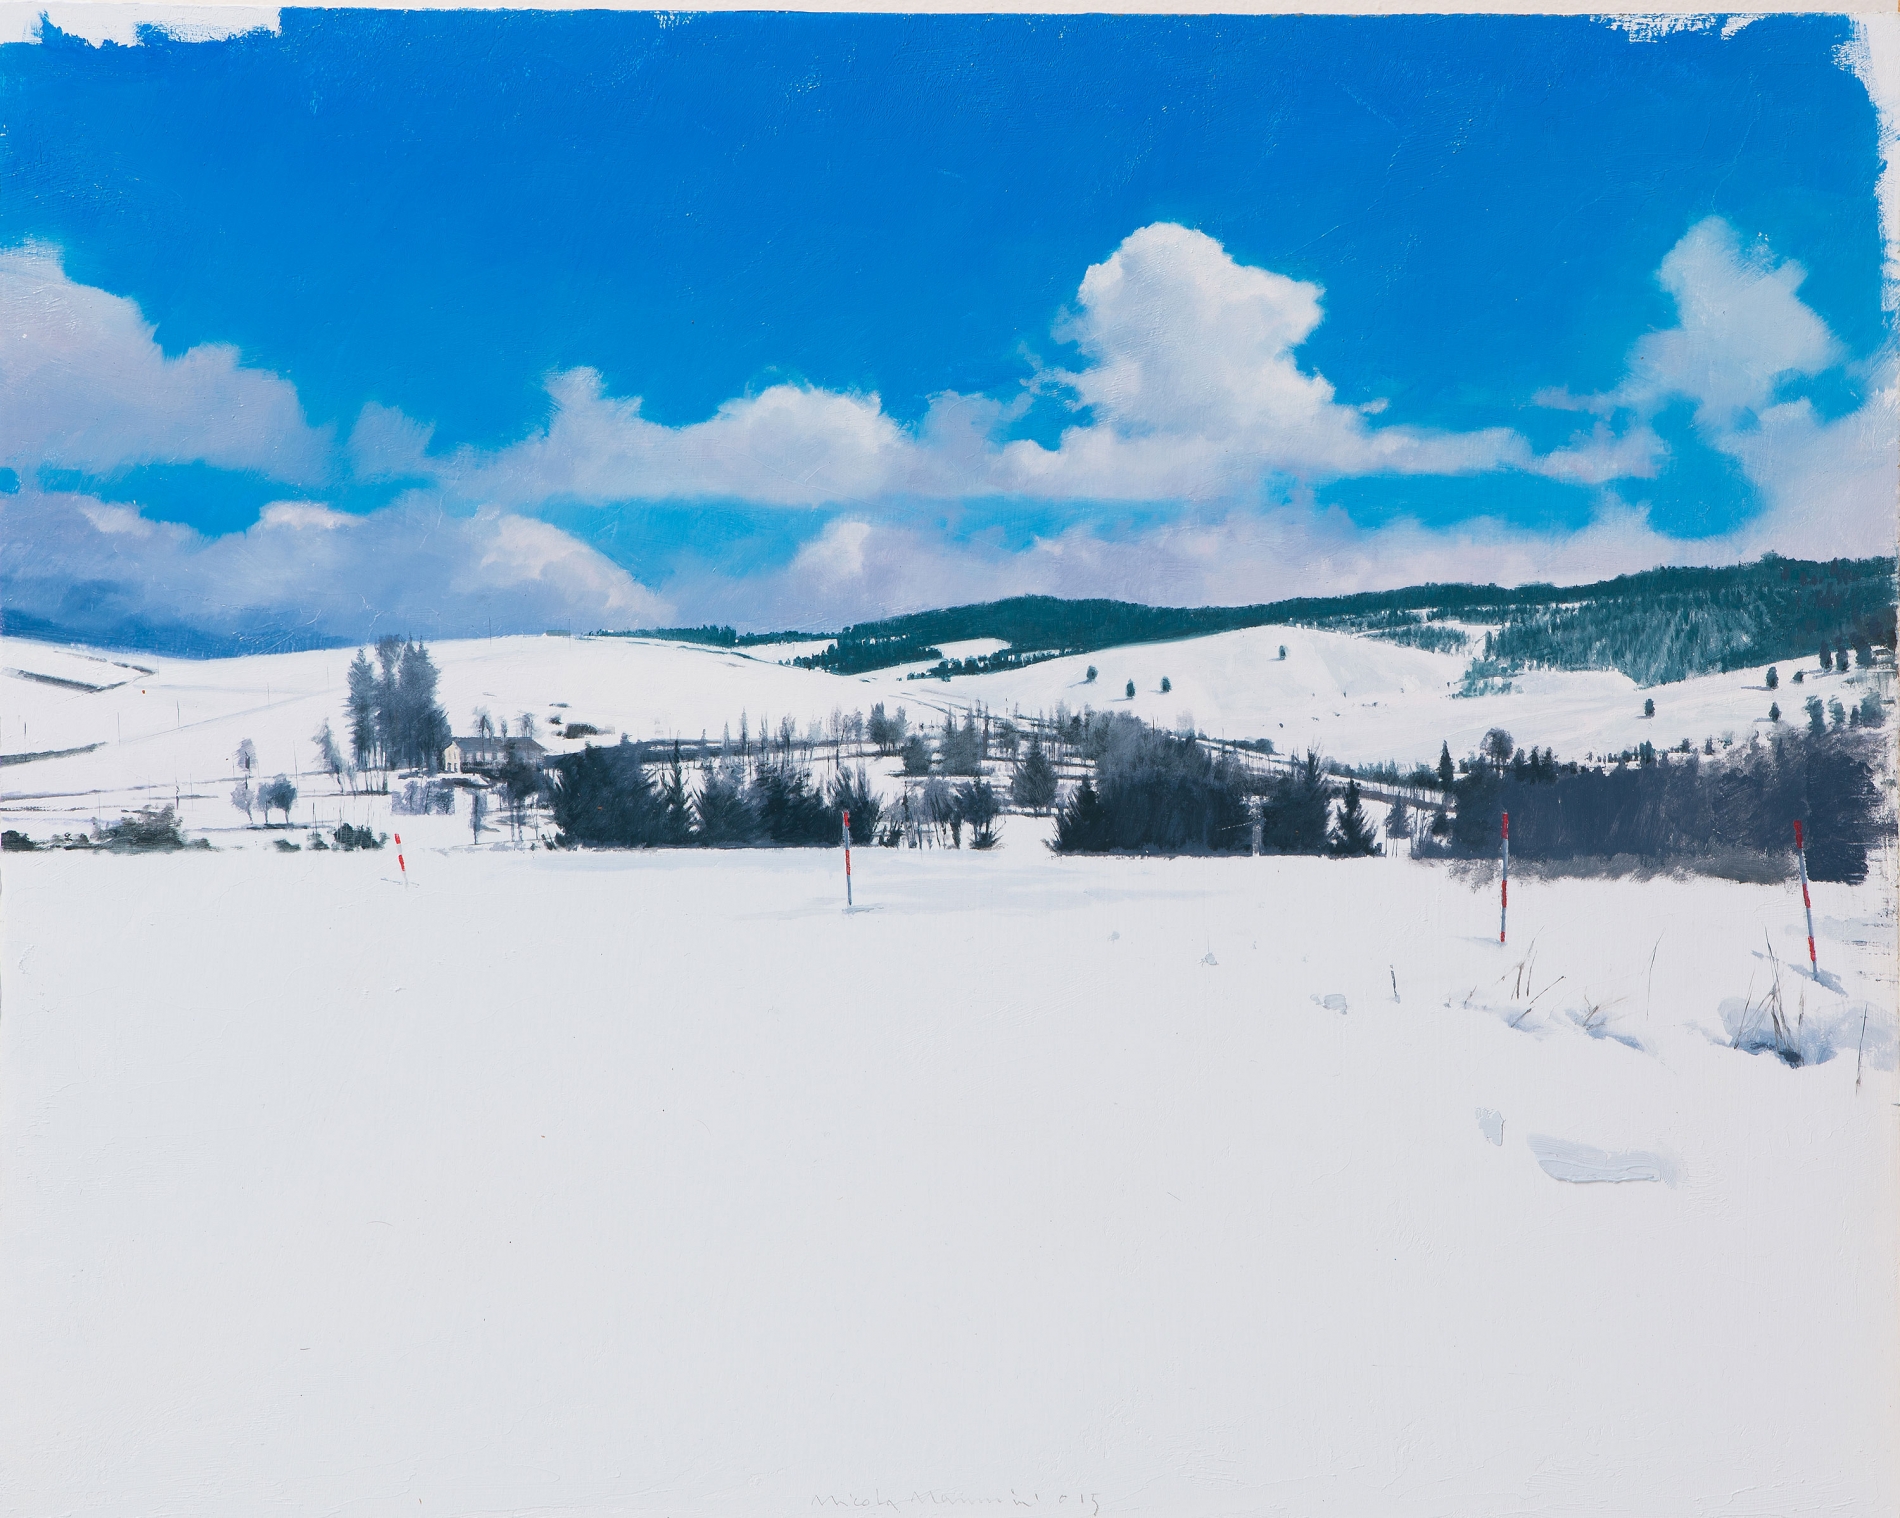 <span class='grassetto'>Neve.Visione nitida</span>[br], 2015, olio su tavola, cm 40x50